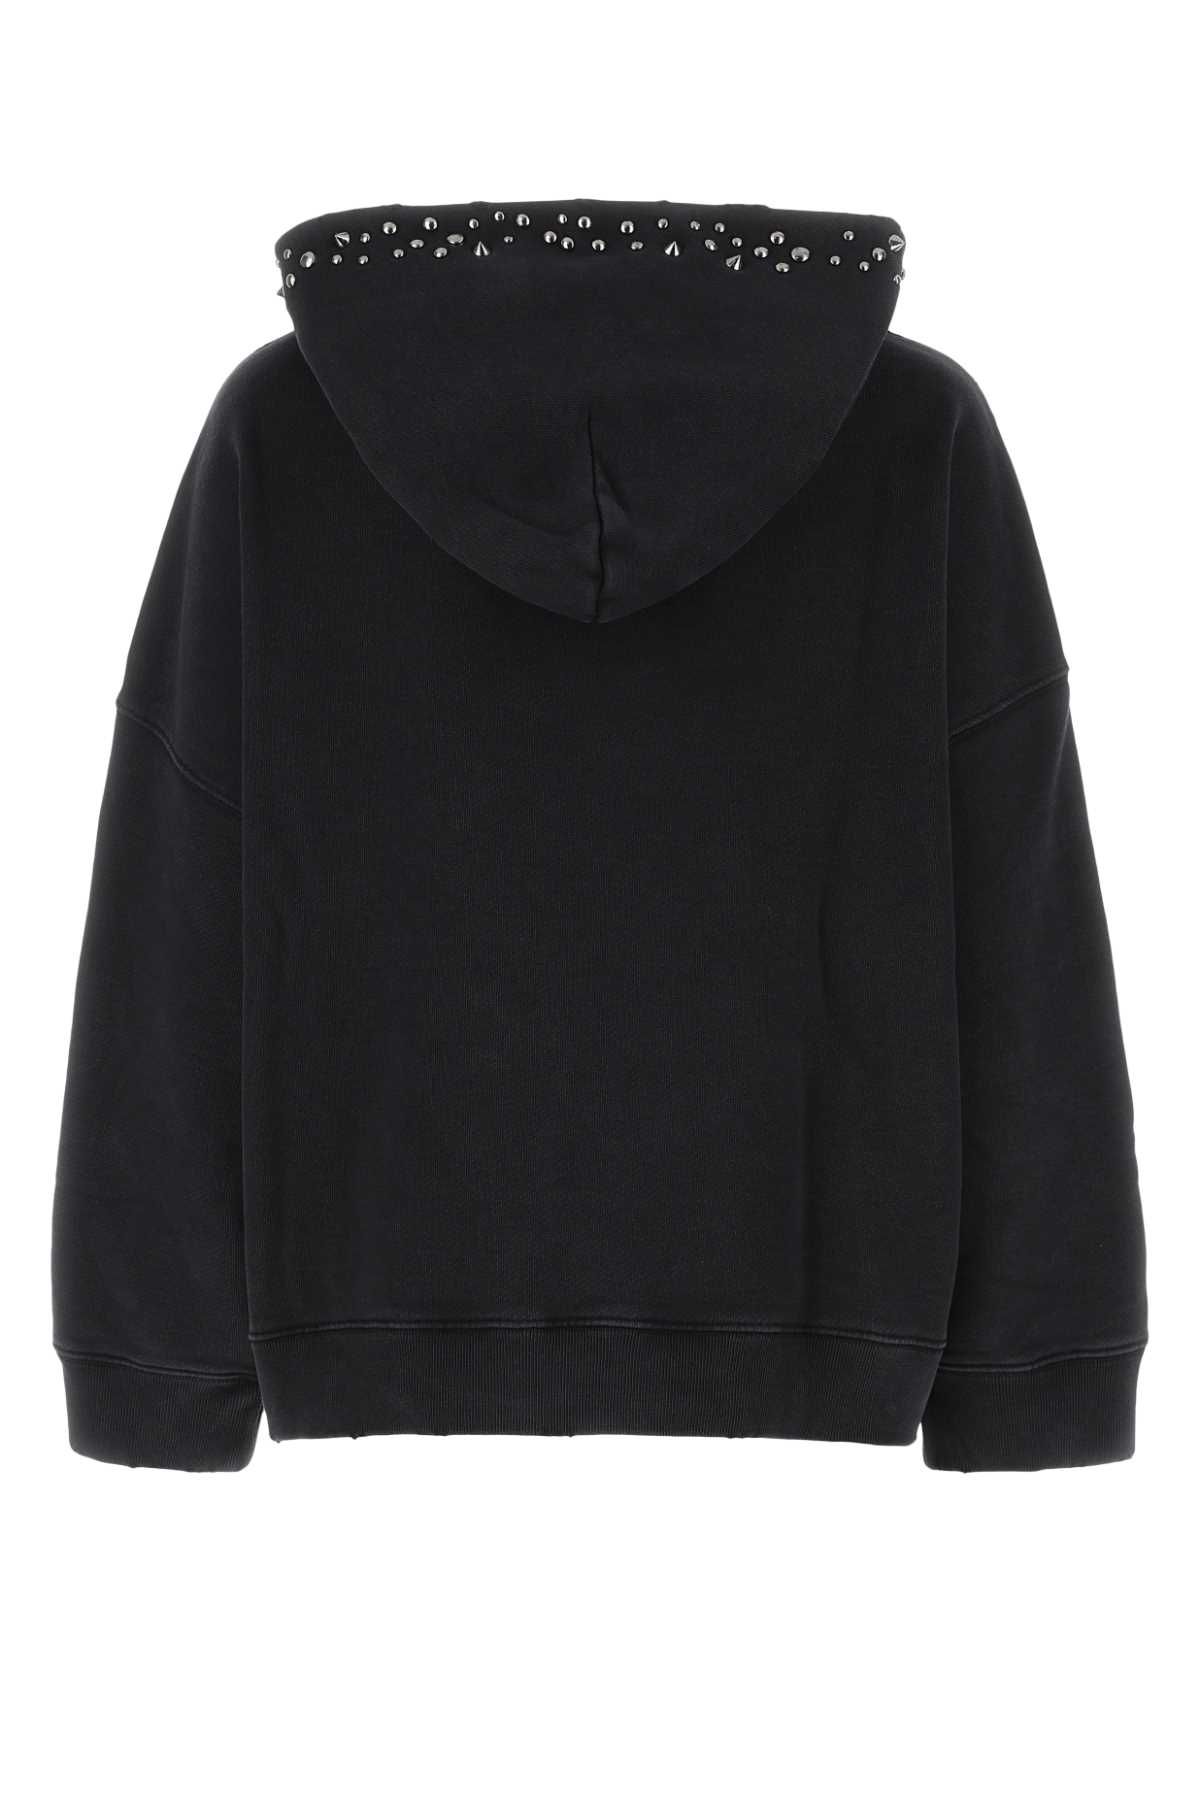 Versace Black Cotton Oversize Sweatshirt In Multi